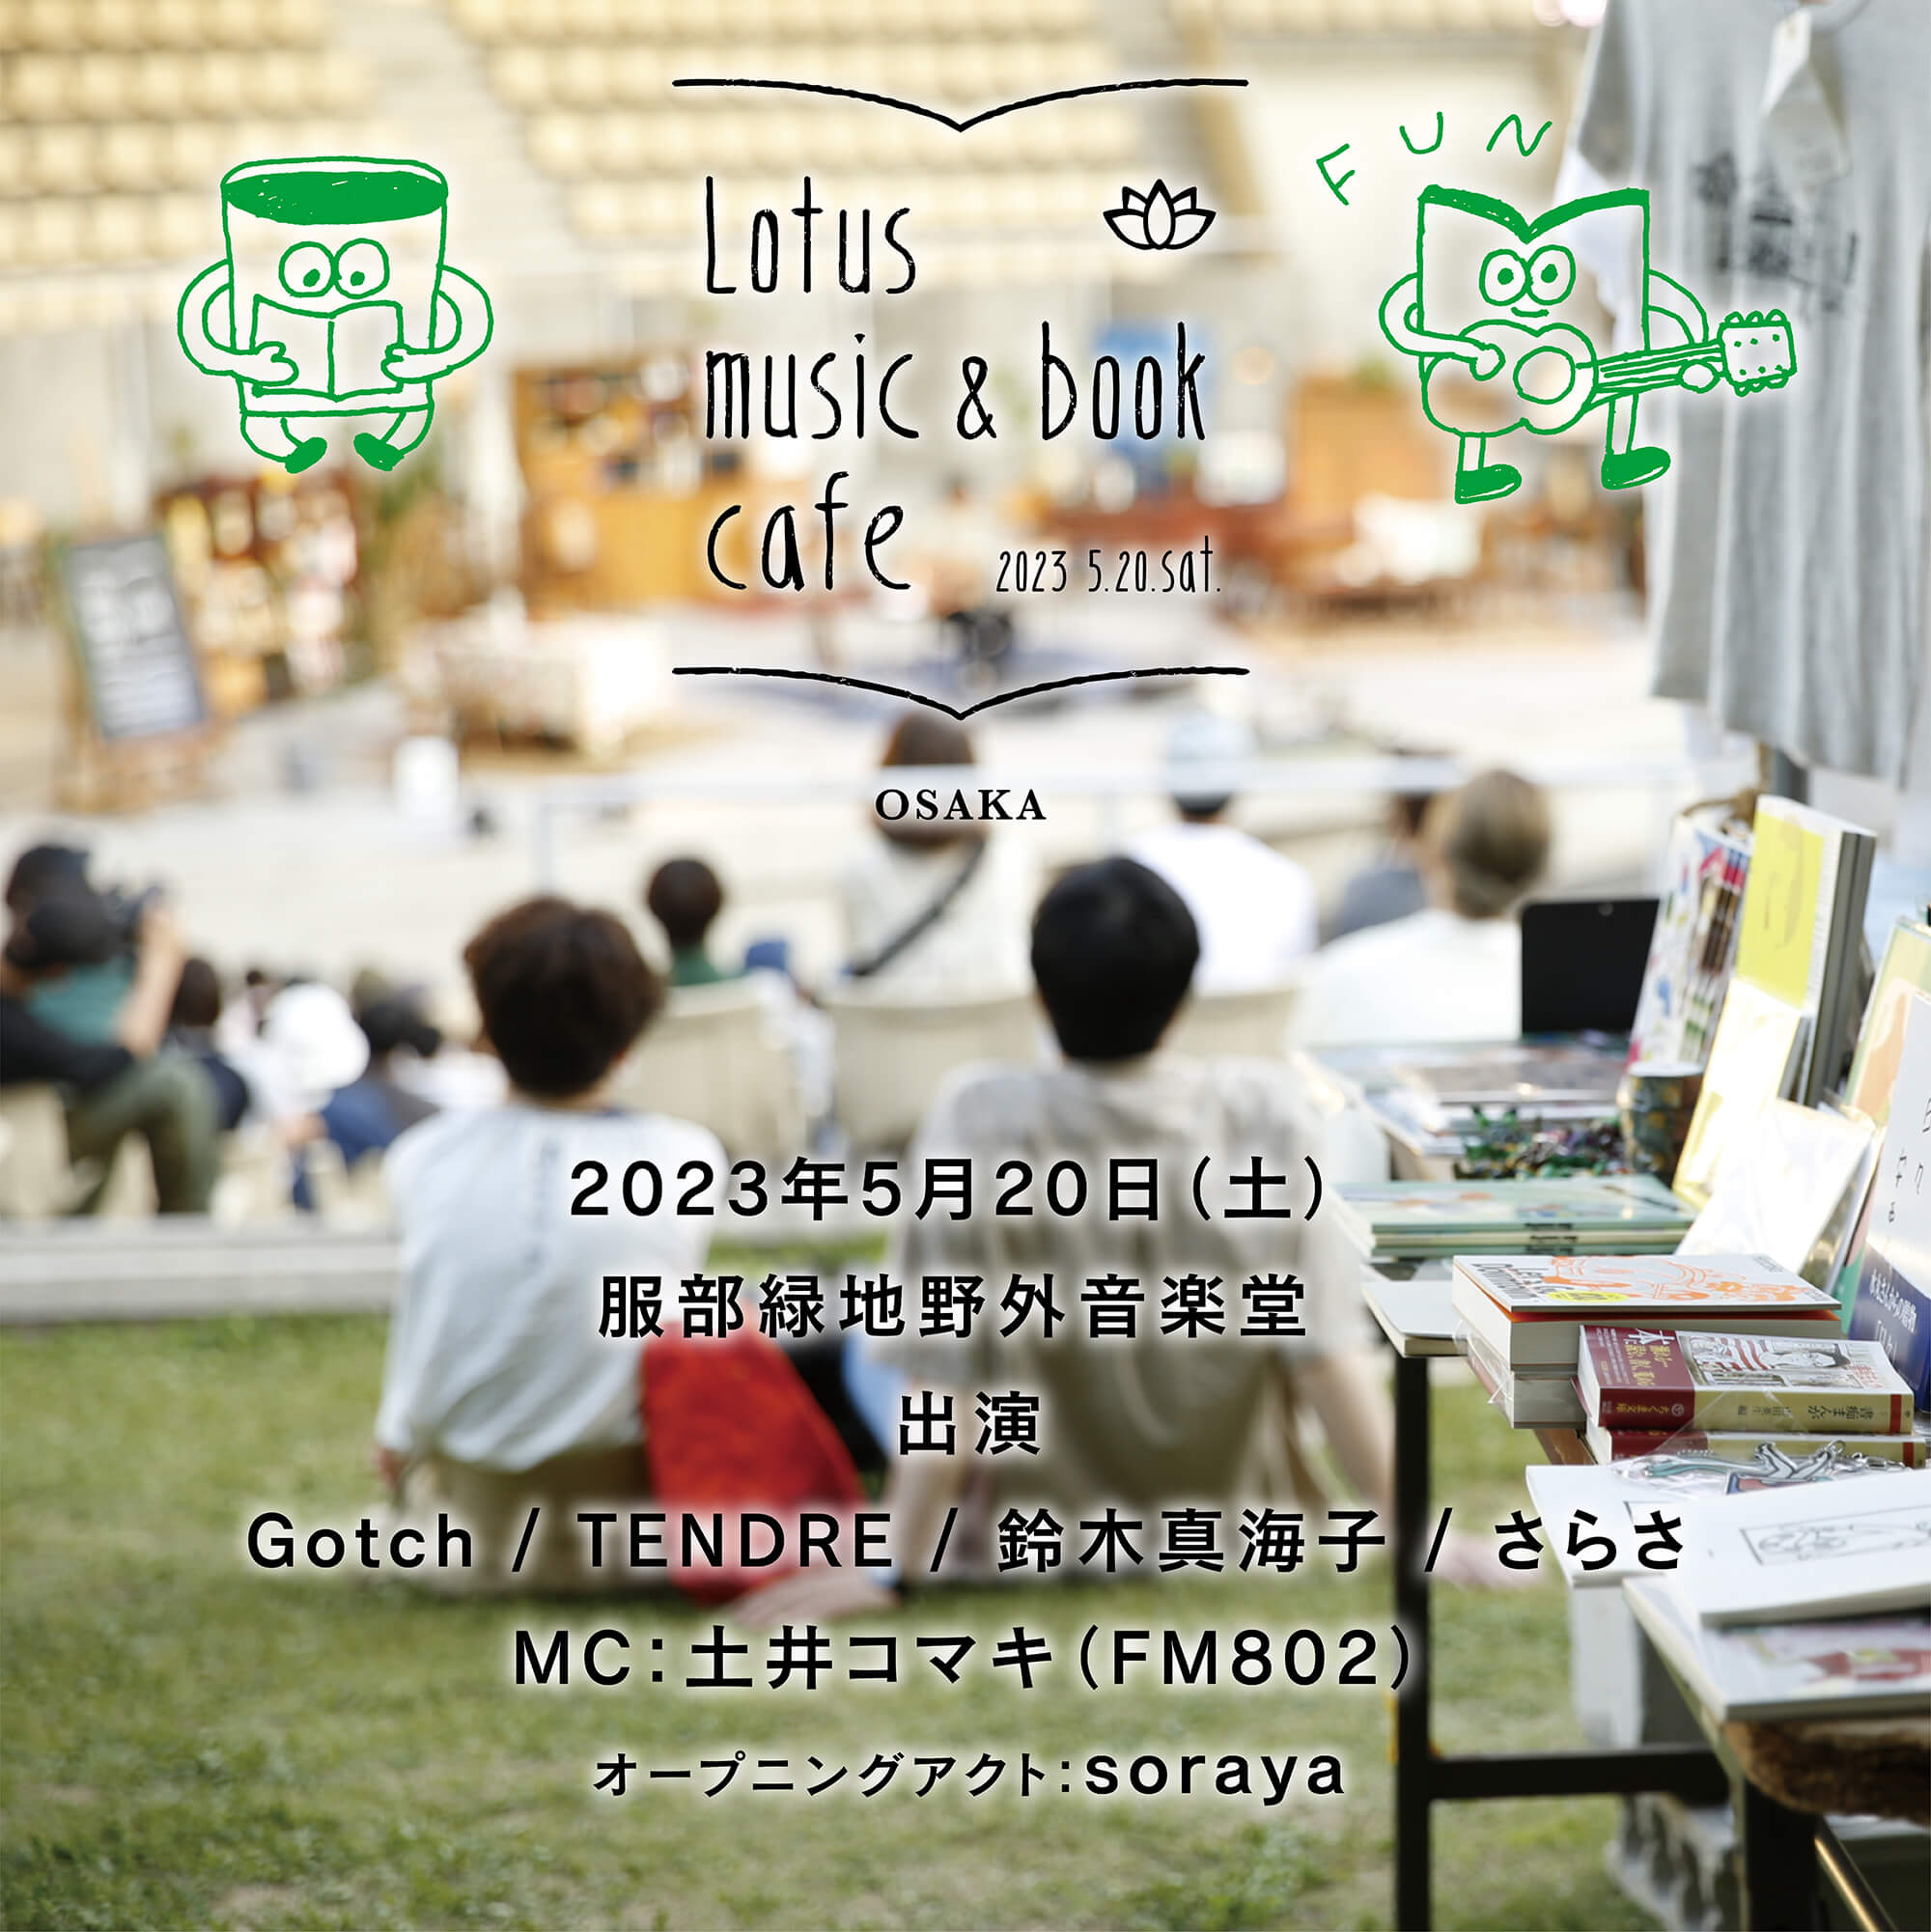 Lotus music & book cafe '23
in 大阪